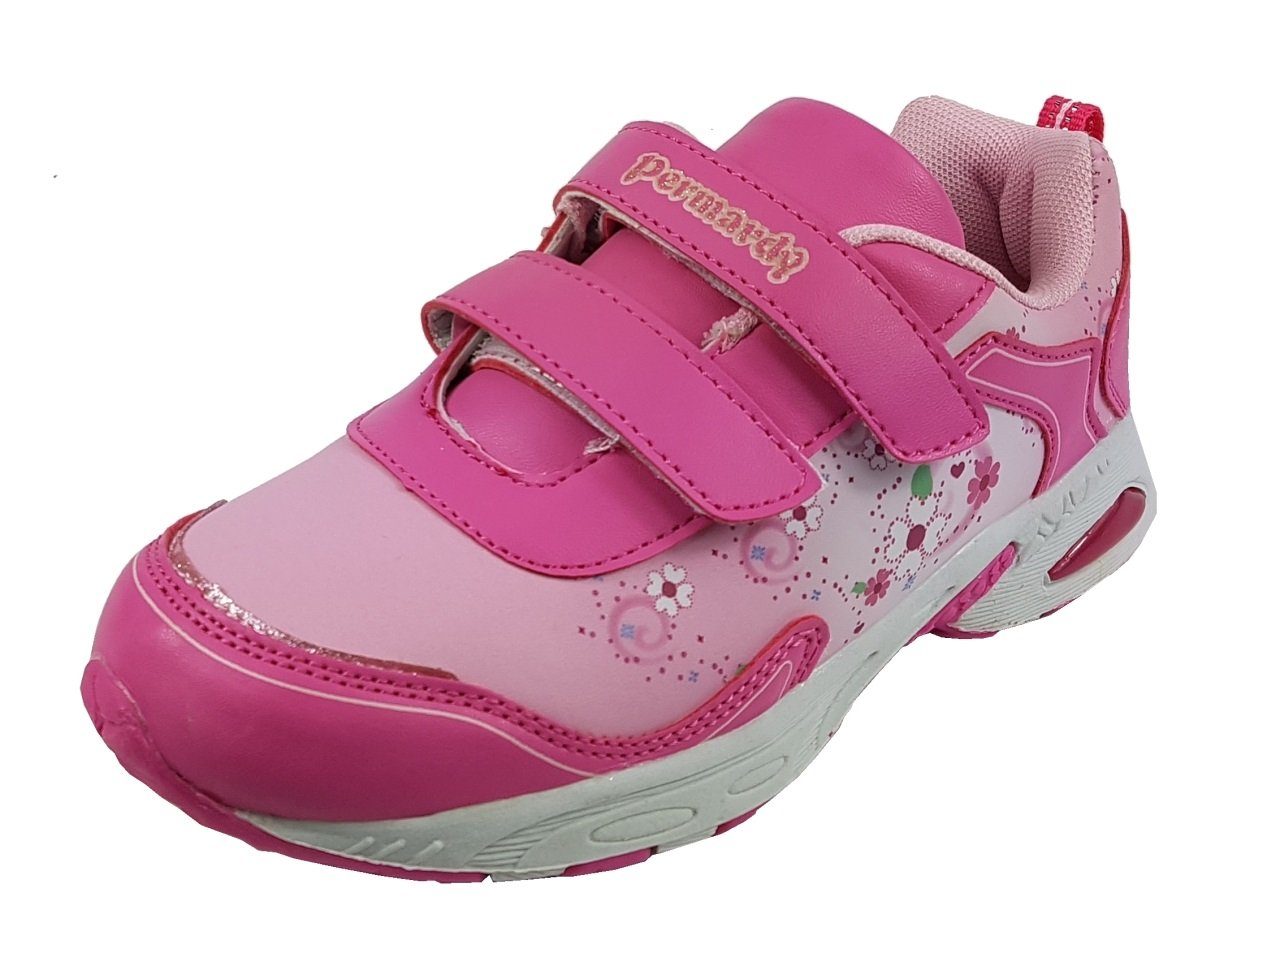 Girls Fashion Mädchen Sneaker mit praktischem Klettverschluss, A1806 Kletterschuh Pink